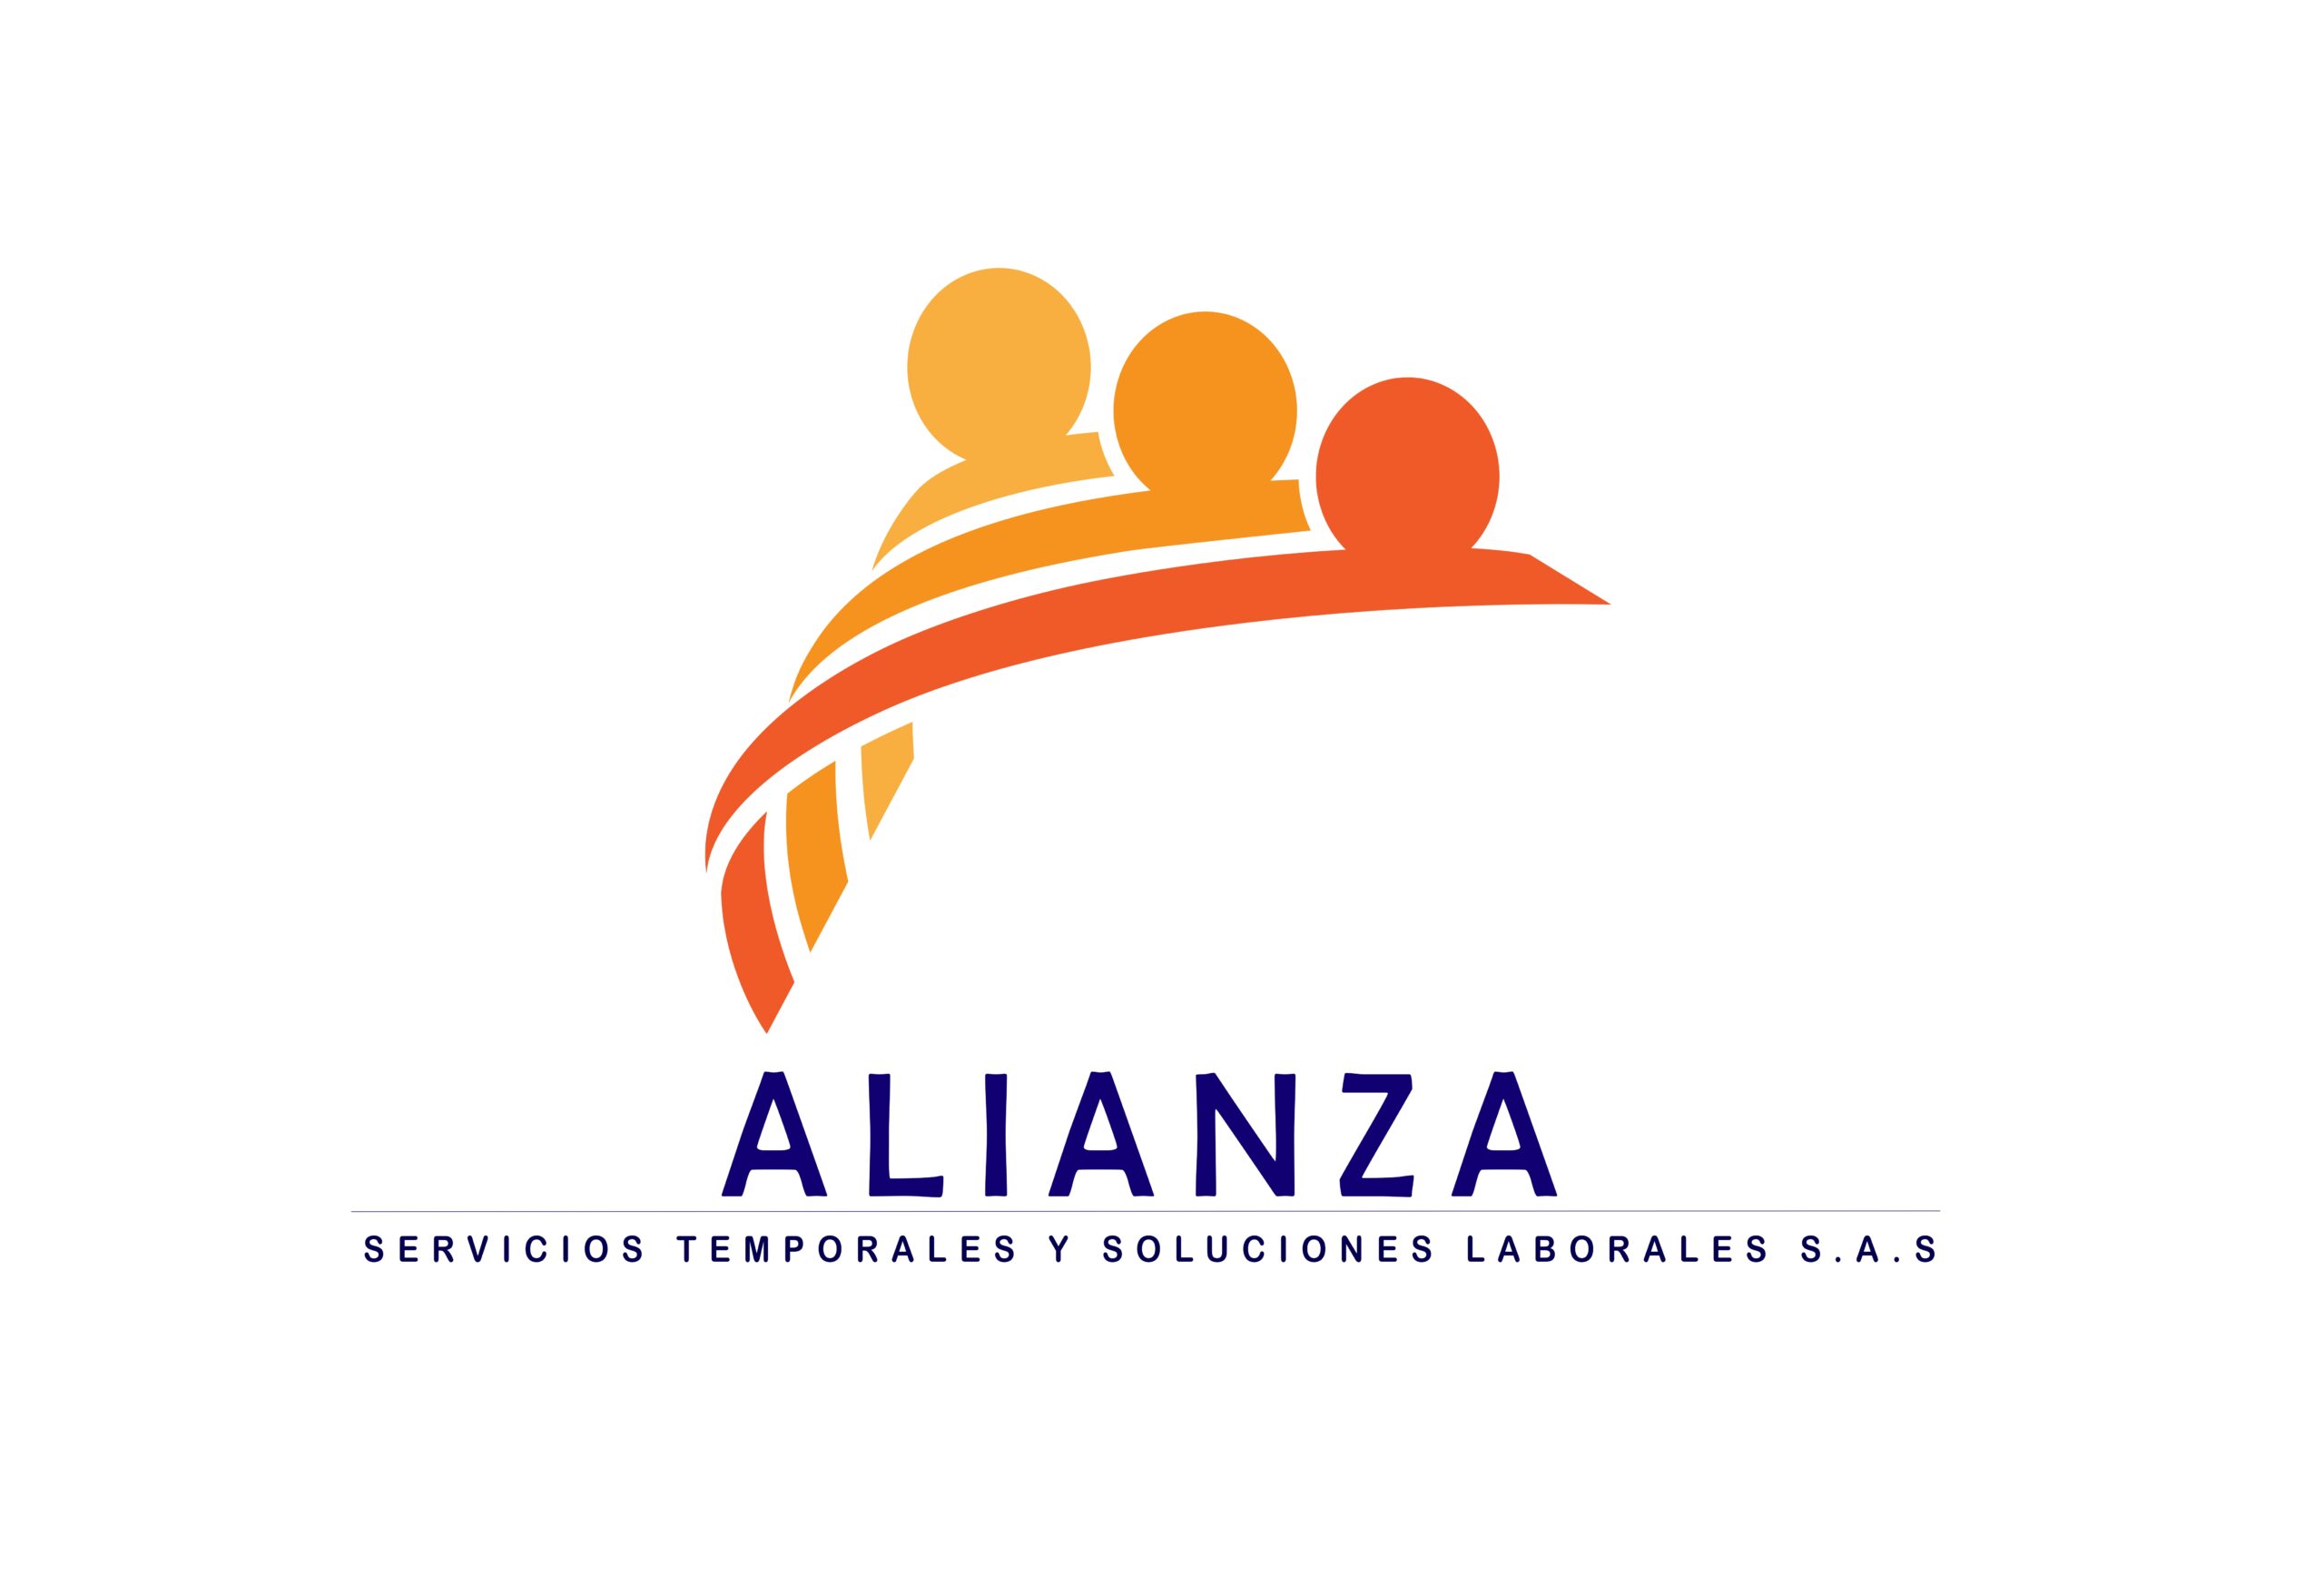 ALIANZA SERVICIOS TEMPORALES Y SOLUCIONES LABORALES S.A.S.